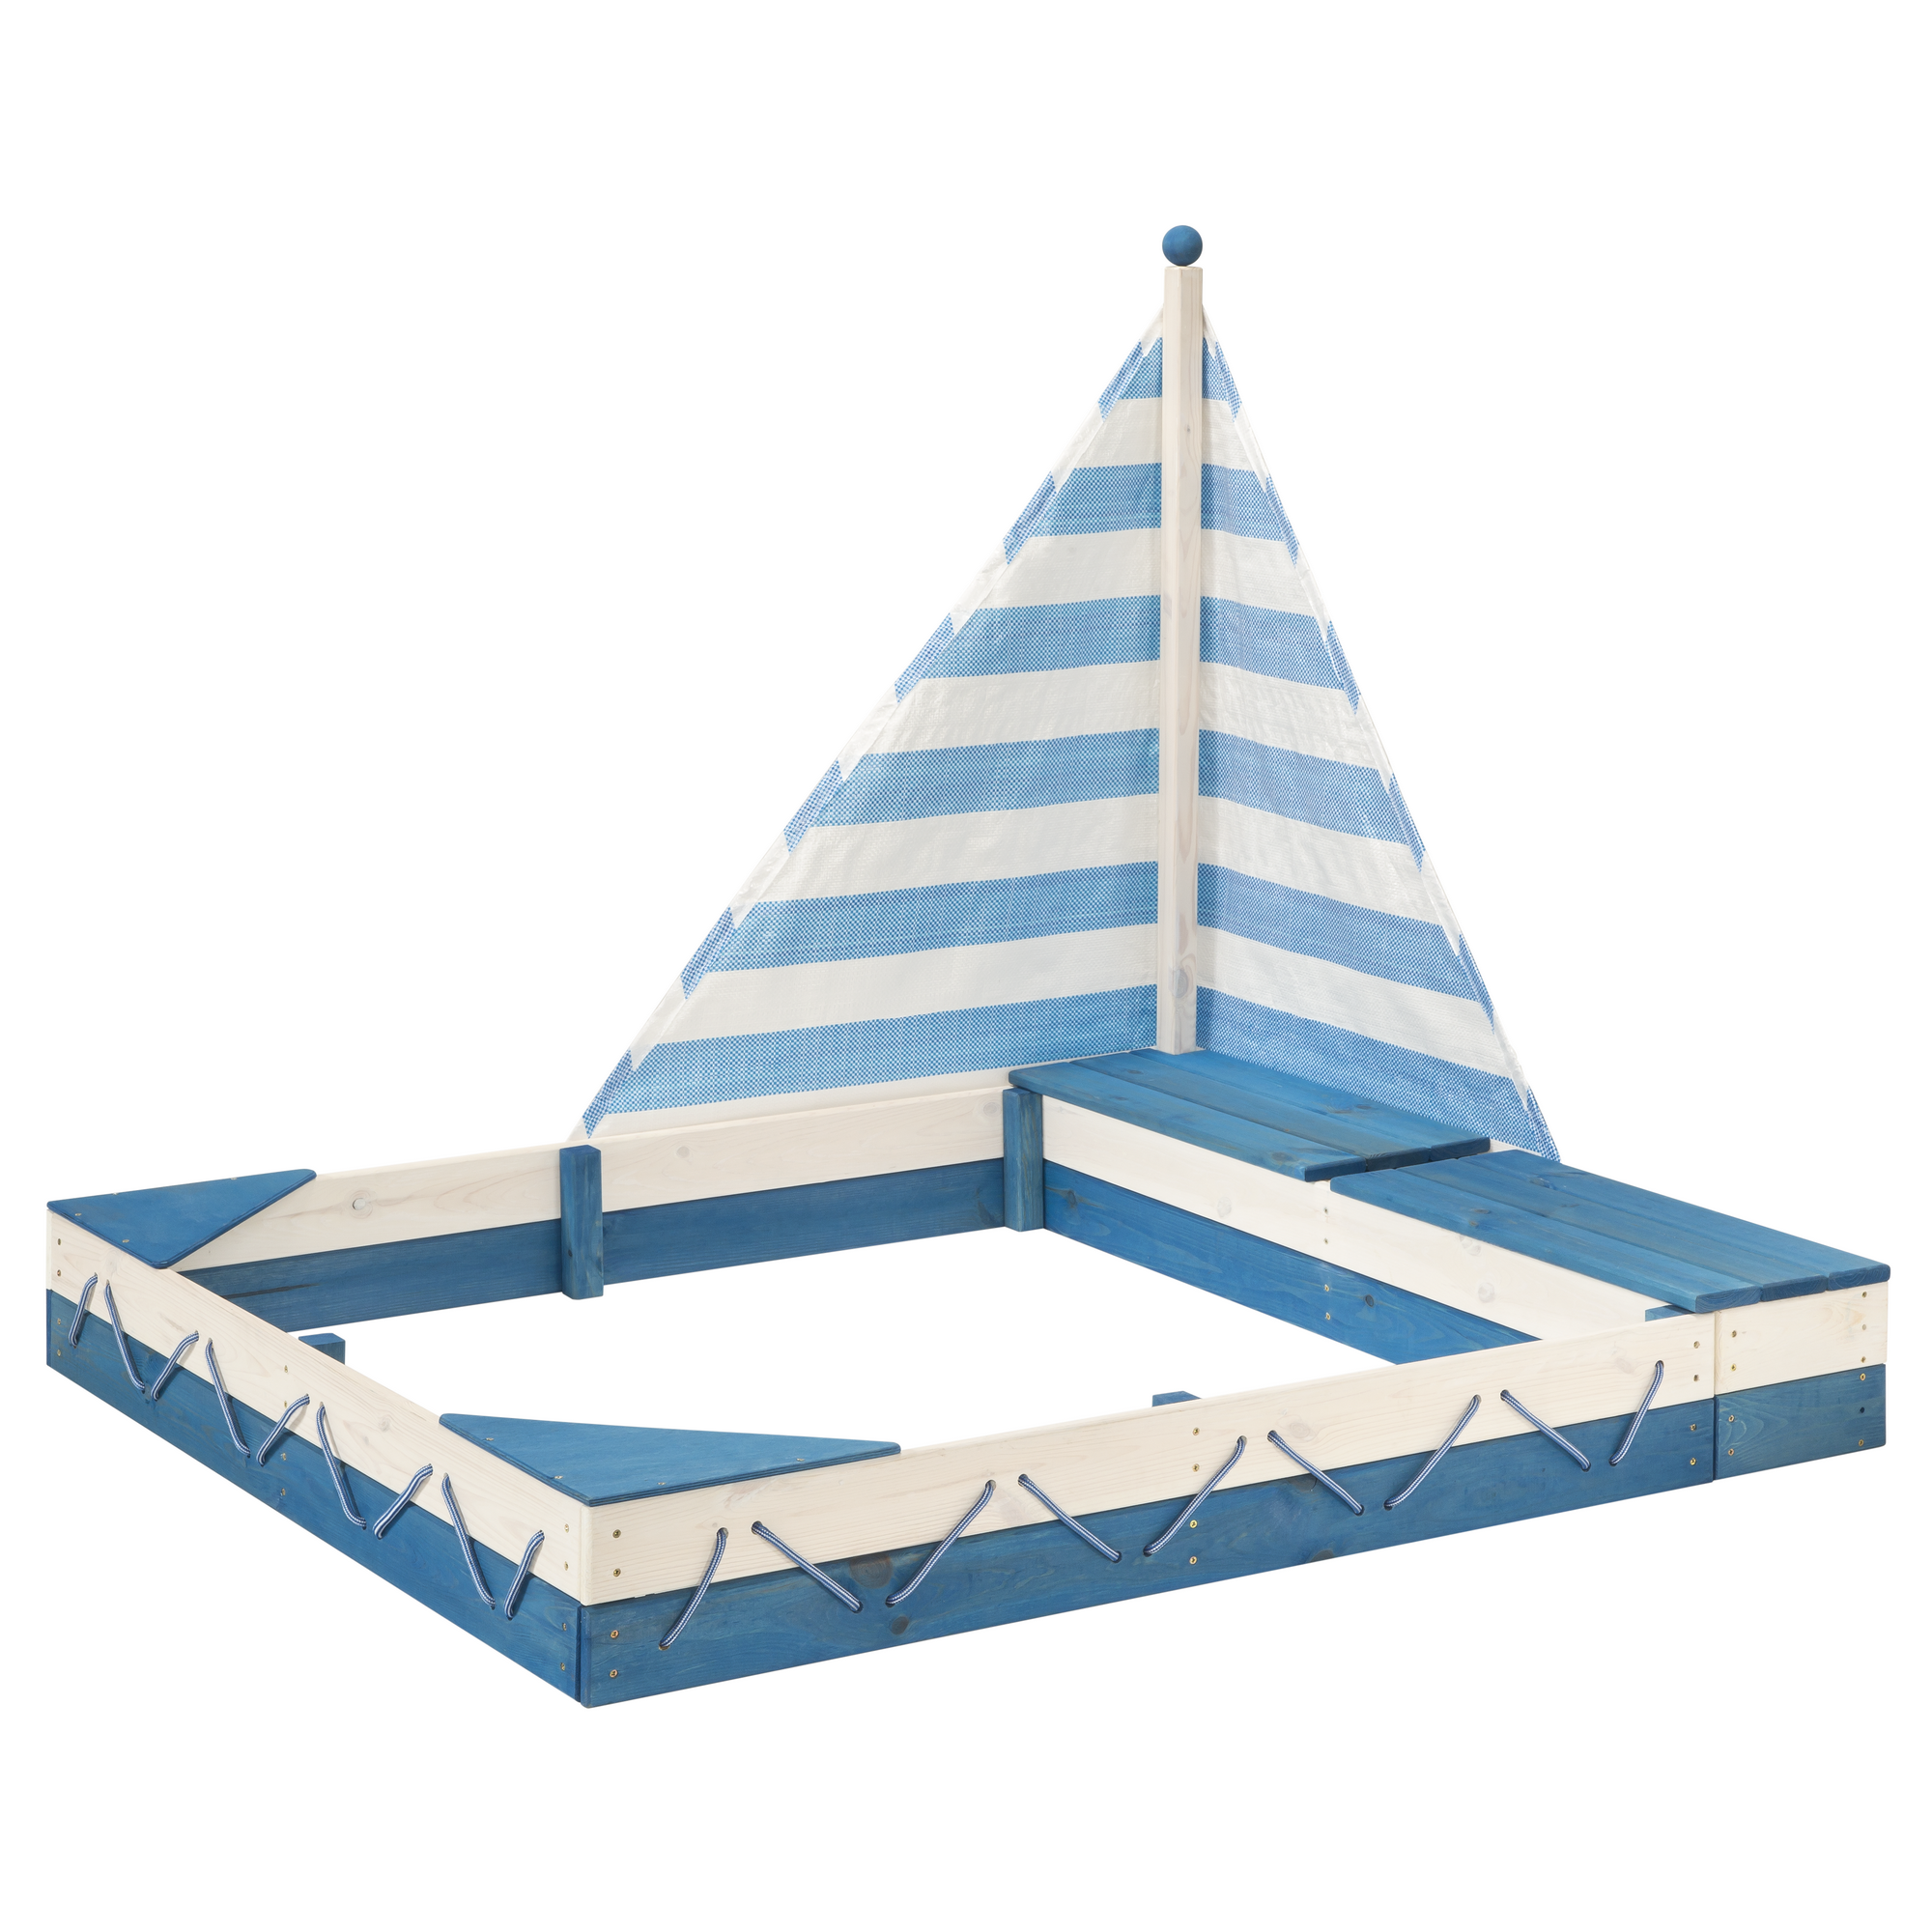 Sandkasten mit Sonnensegel 'Ole' Kiefer blau/weiß 138 x 120 x 114 cm + product picture